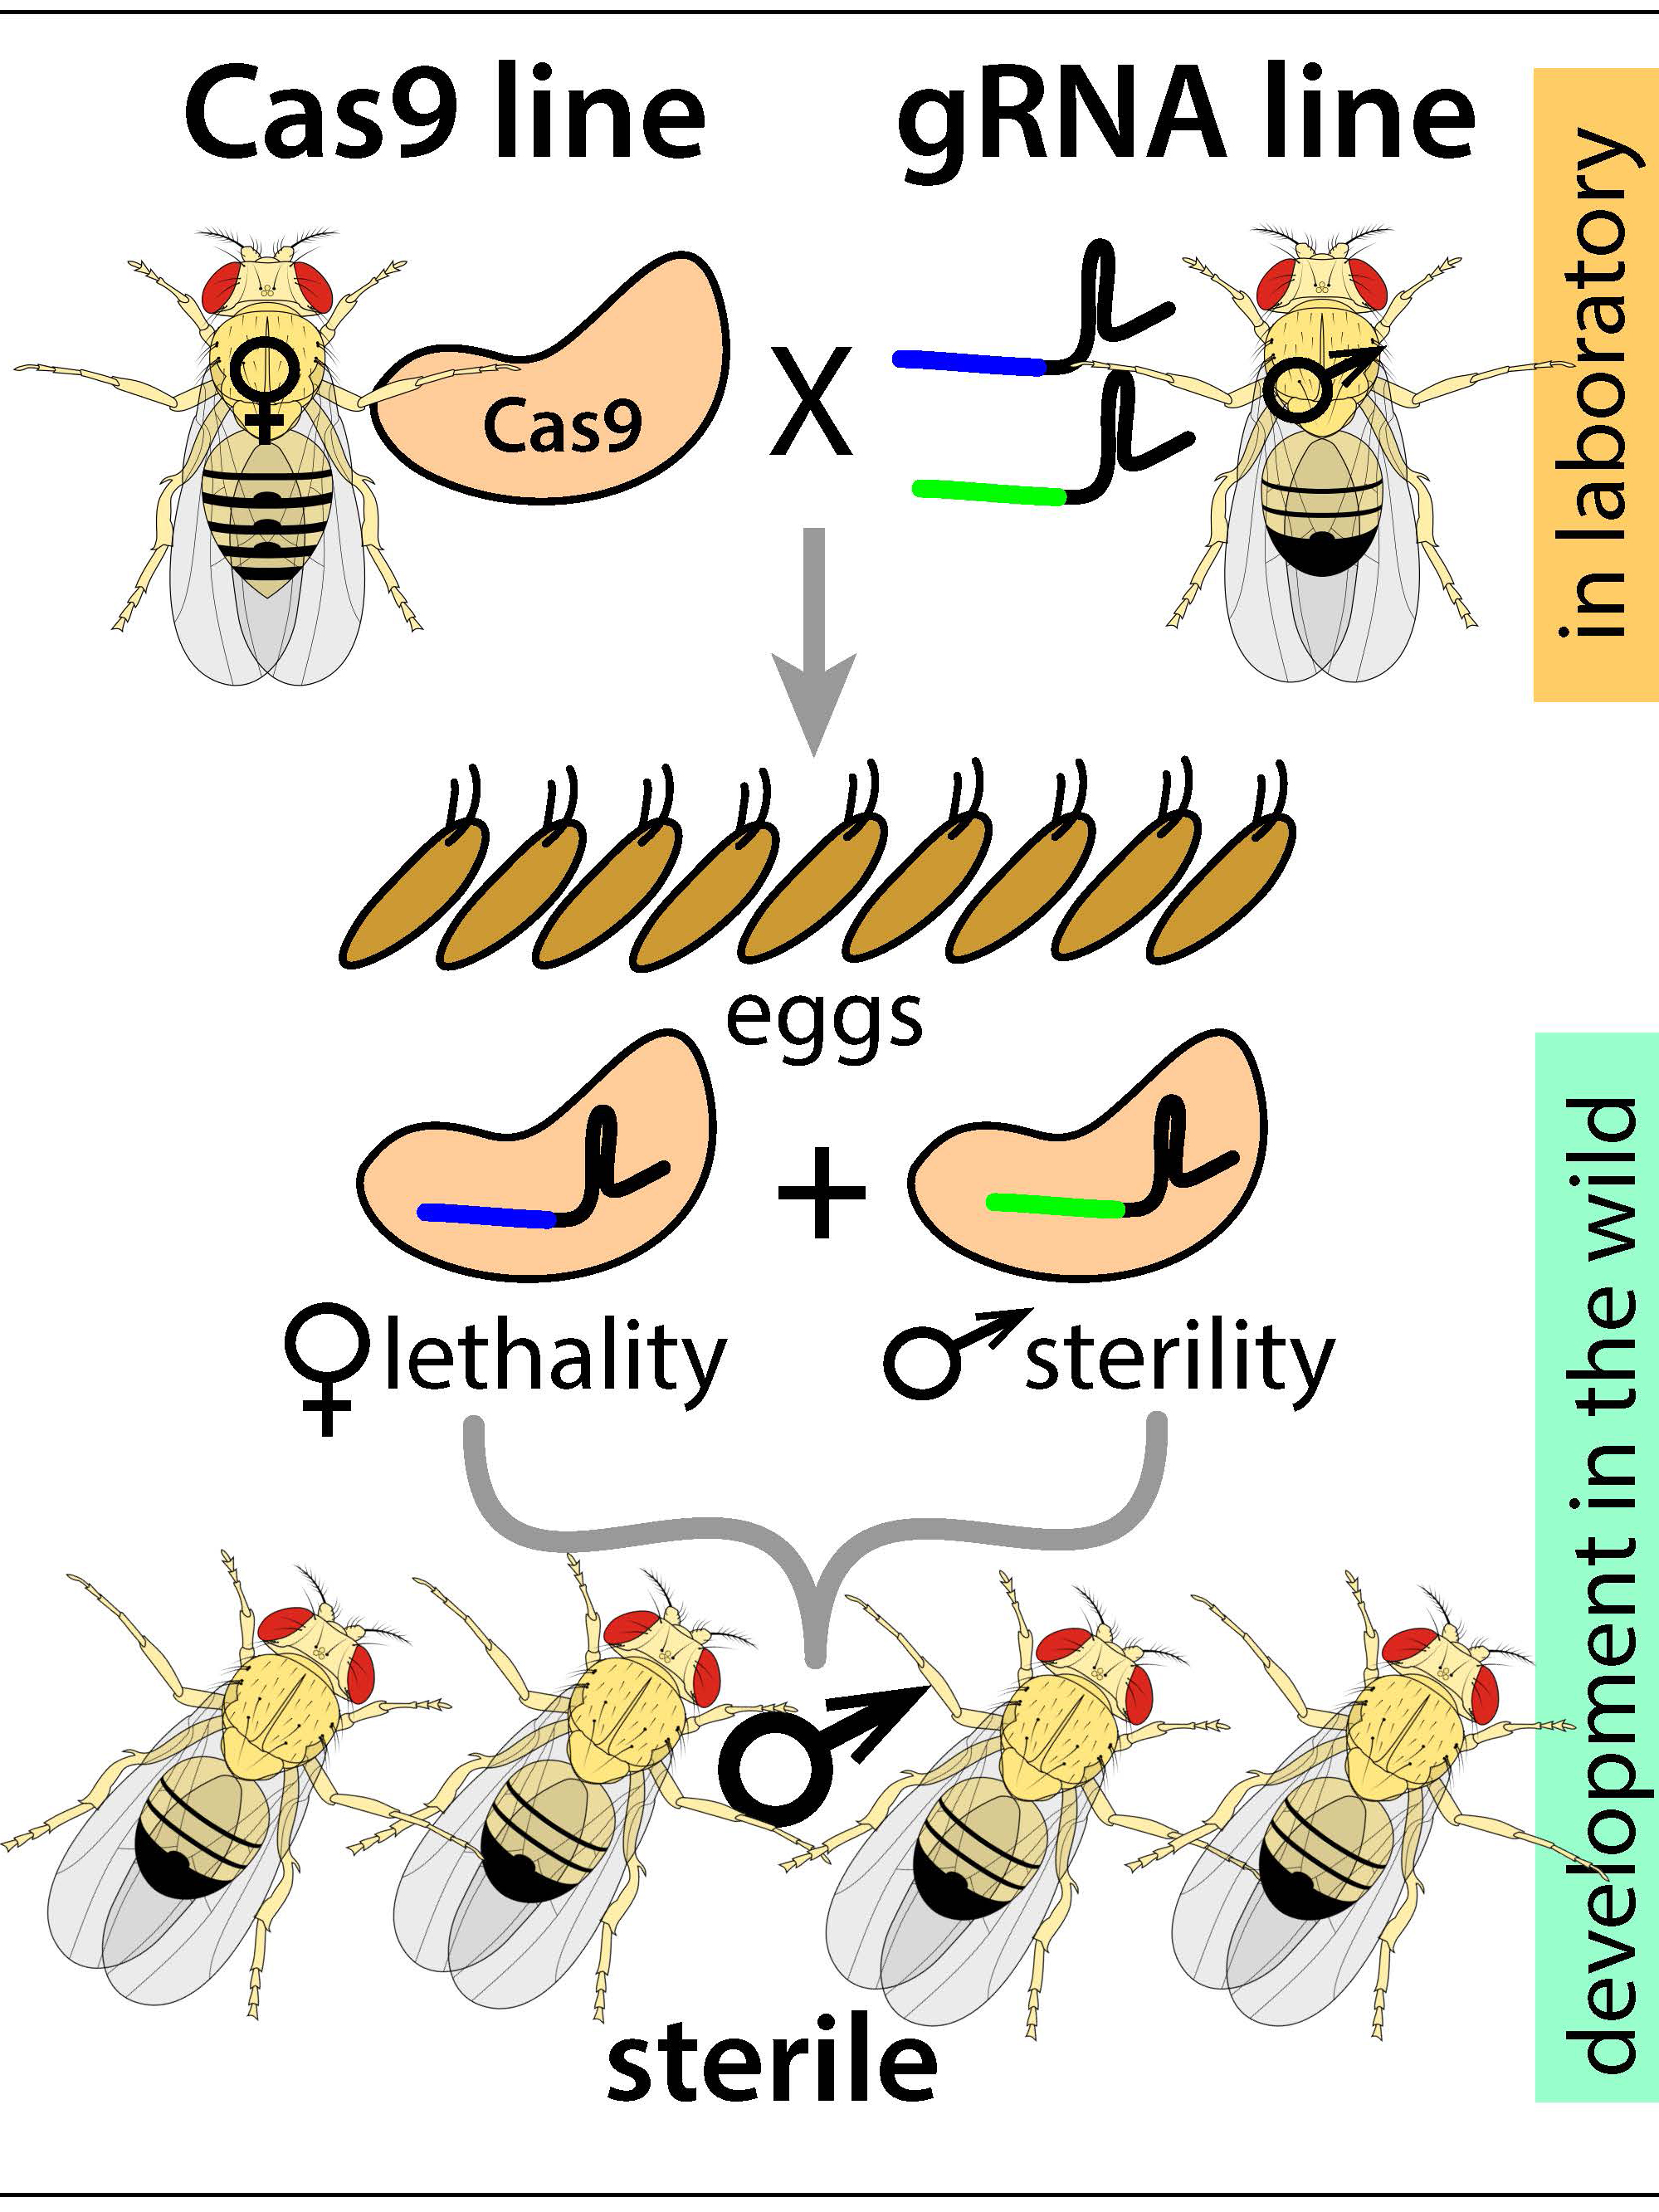 Precision-guided sterile insect technique schematic